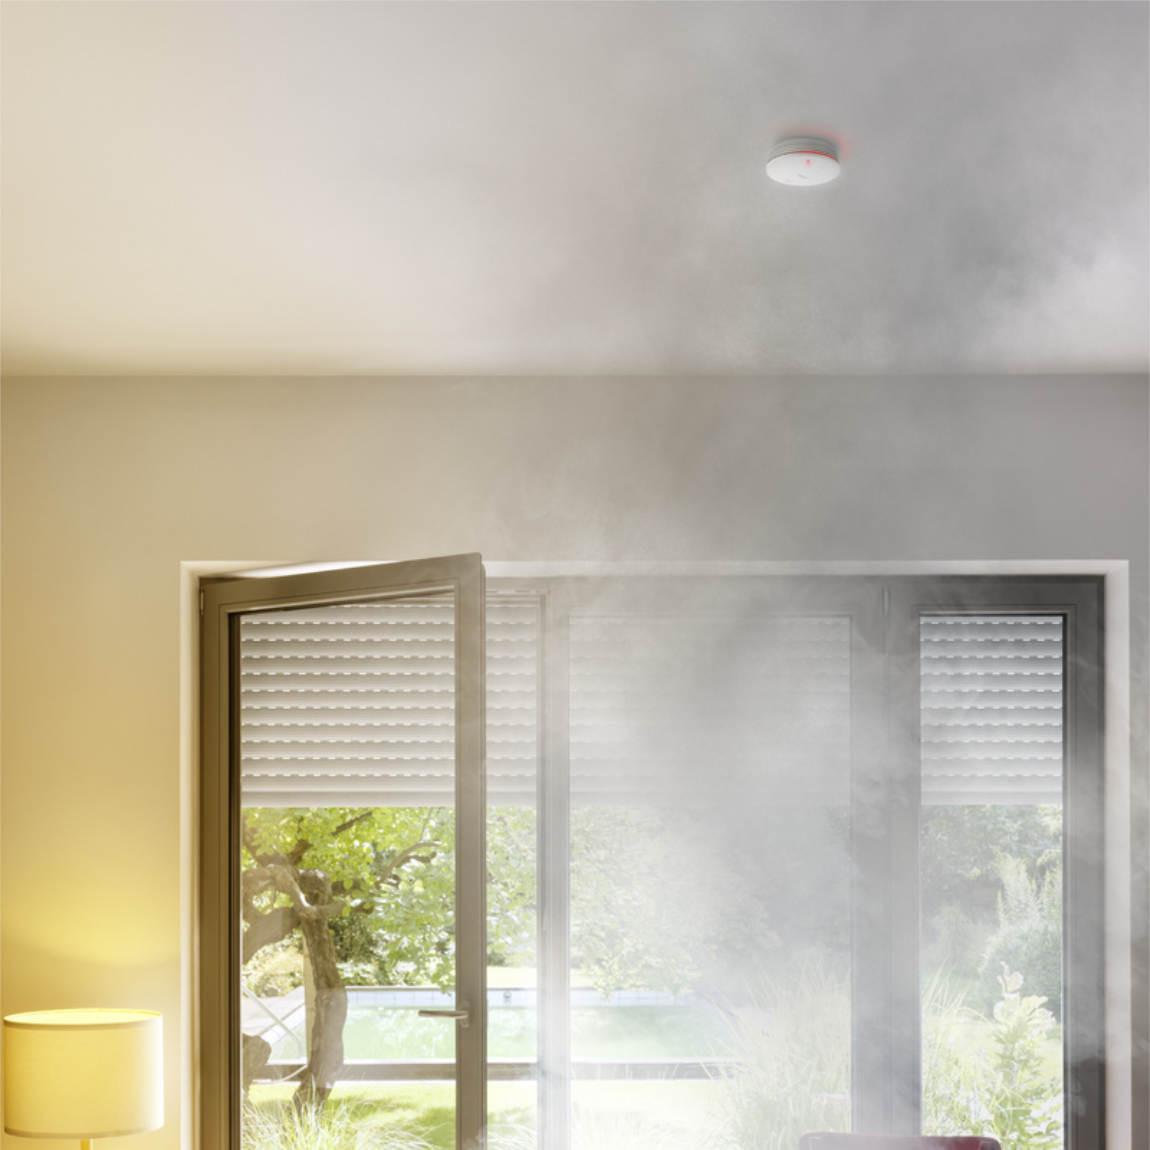 Bosch Smart Home Rauchwarnmelder II an Decke mit Rauch